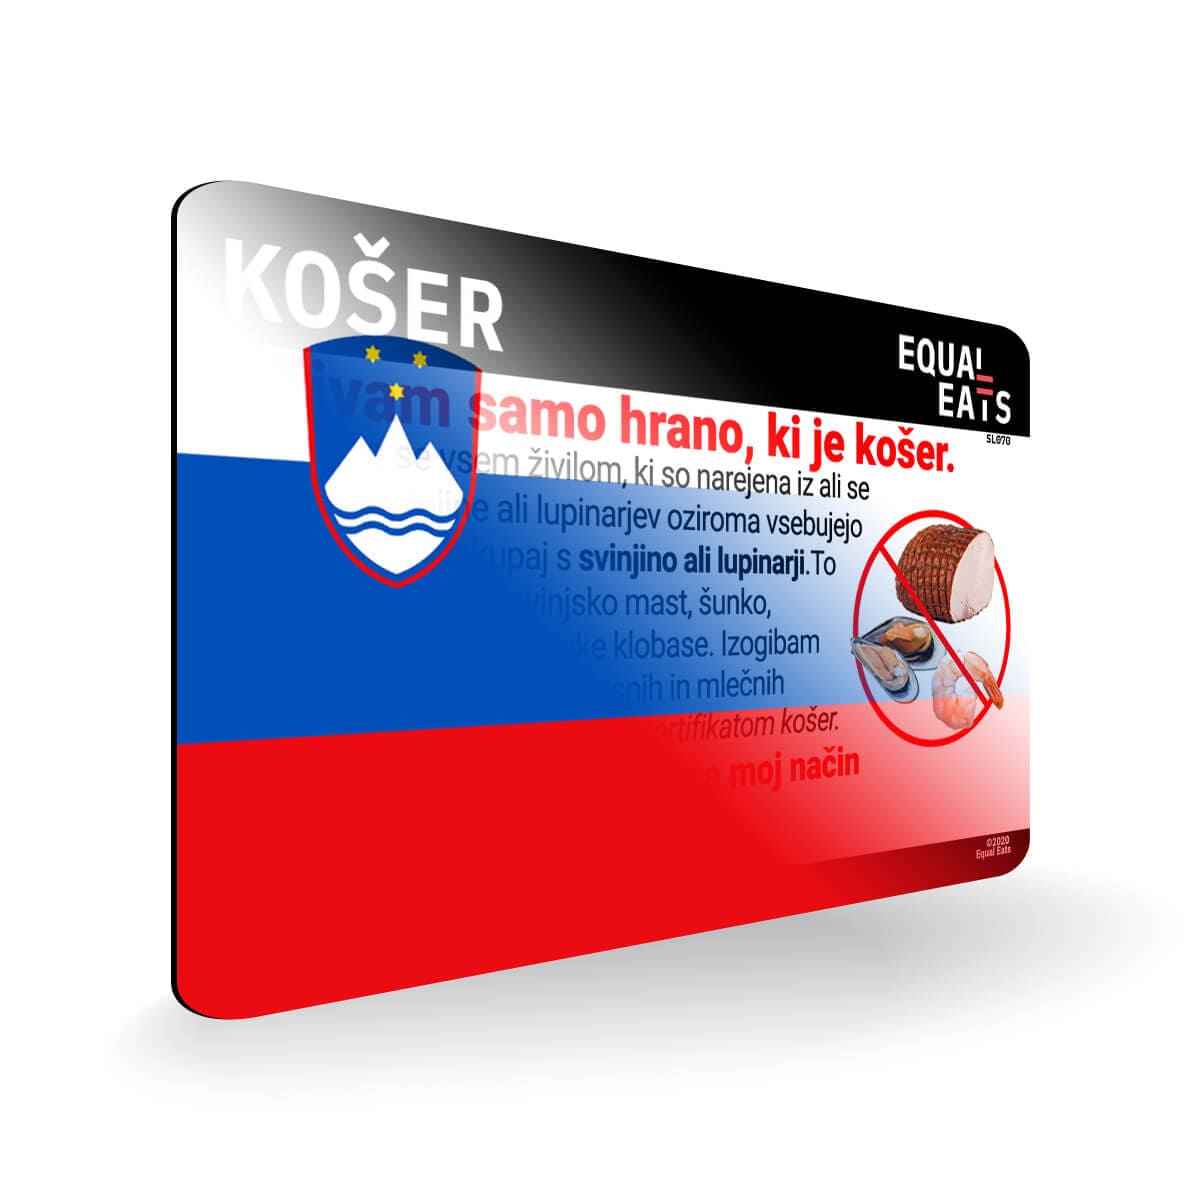 Kosher Diet in Slovenian. Kosher Card for Slovenia